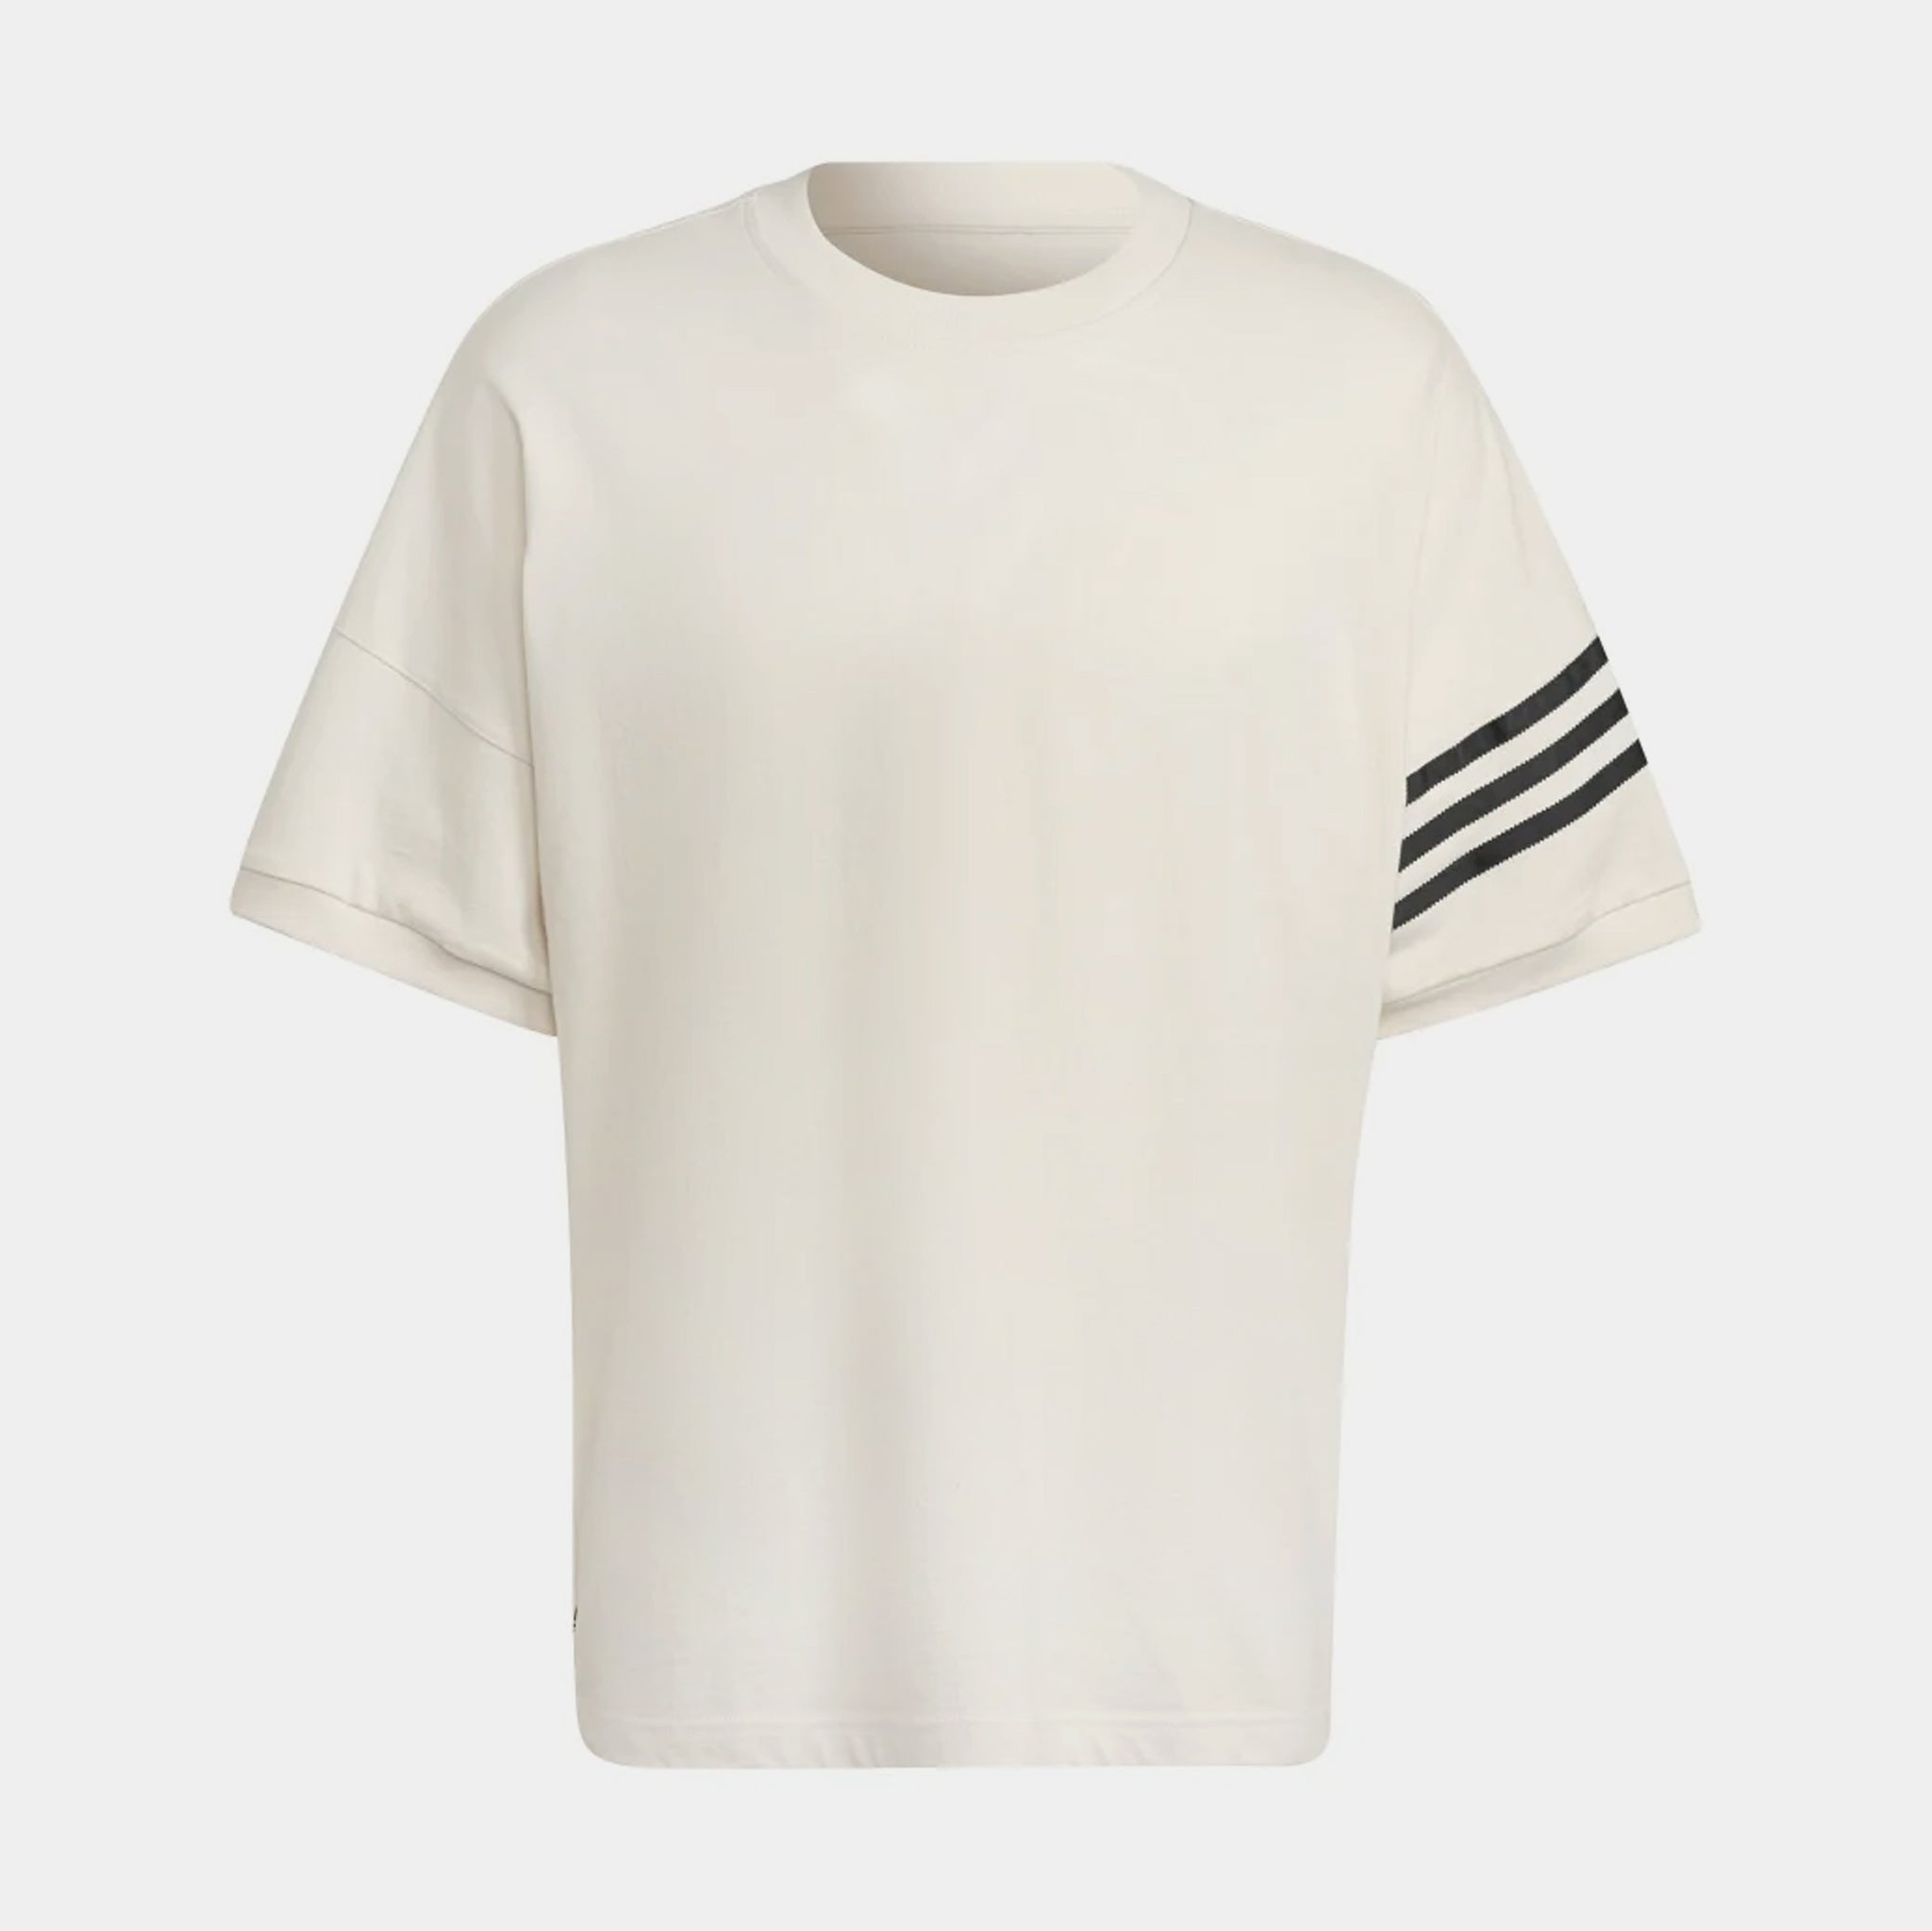 Shoe Palace – Mens Sleeve Adicolor Short adidas Neuclassics Shirt White HM1874